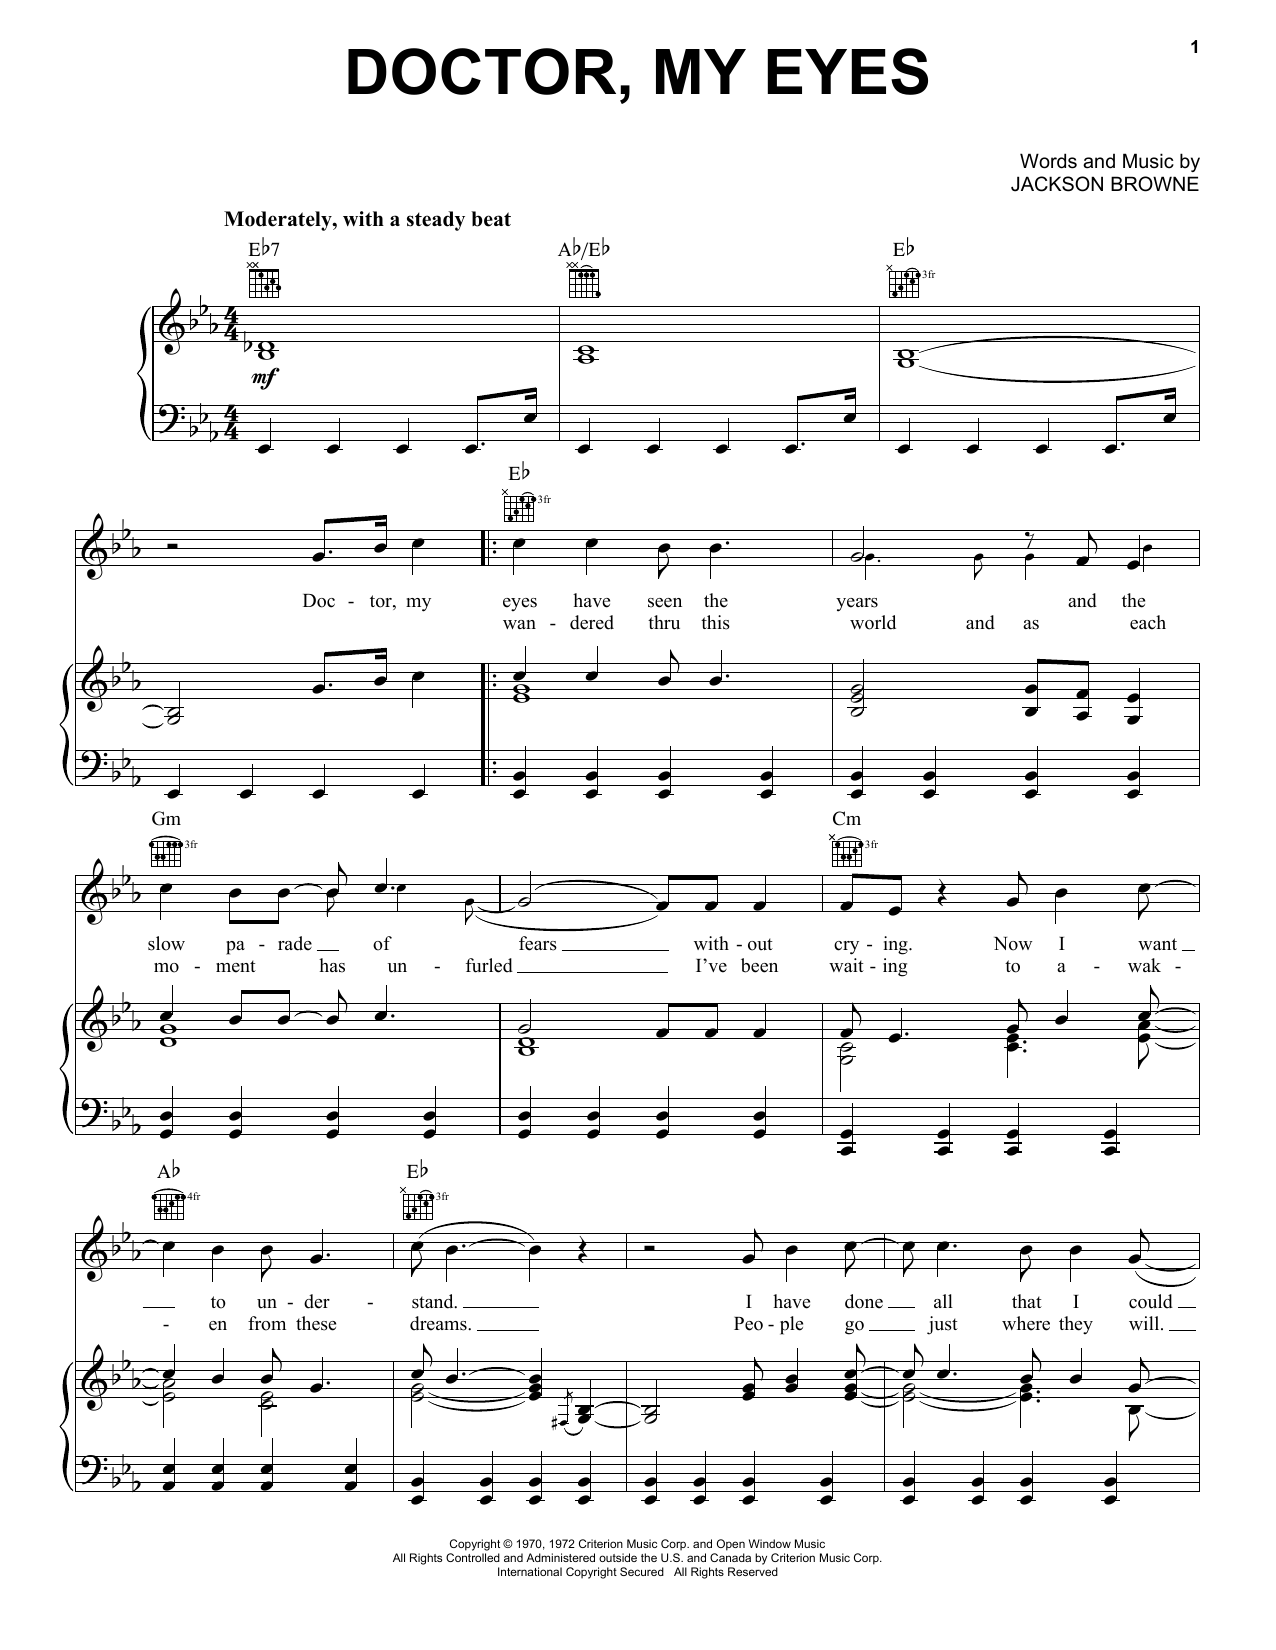 Jackson Browne Doctor, My Eyes Sheet Music Notes & Chords for Lyrics & Chords - Download or Print PDF